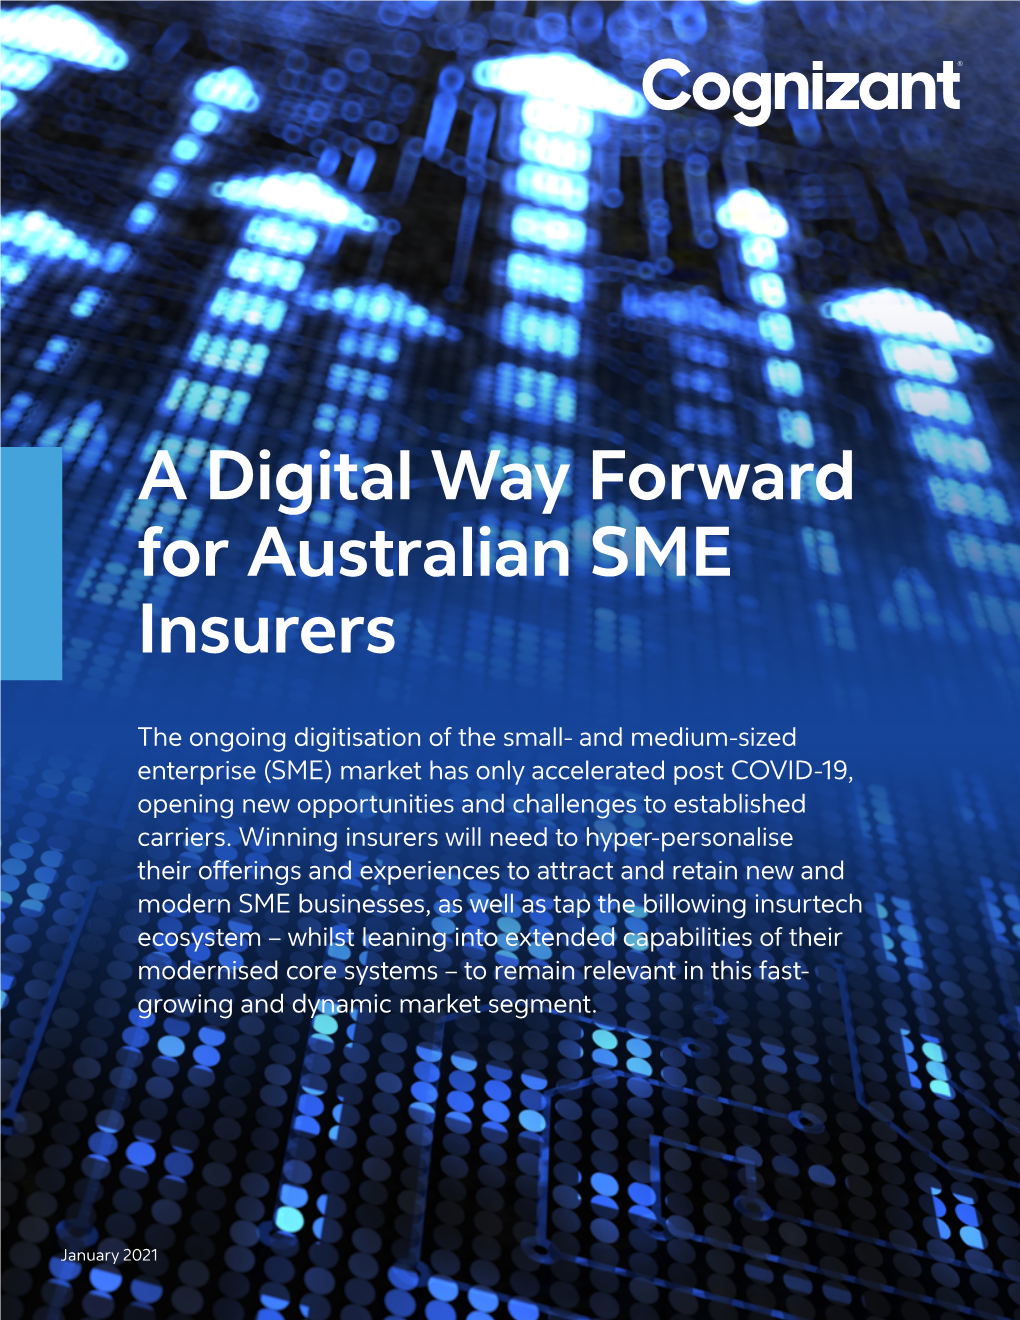 A Digital Way Forward for Australian SME Insurers